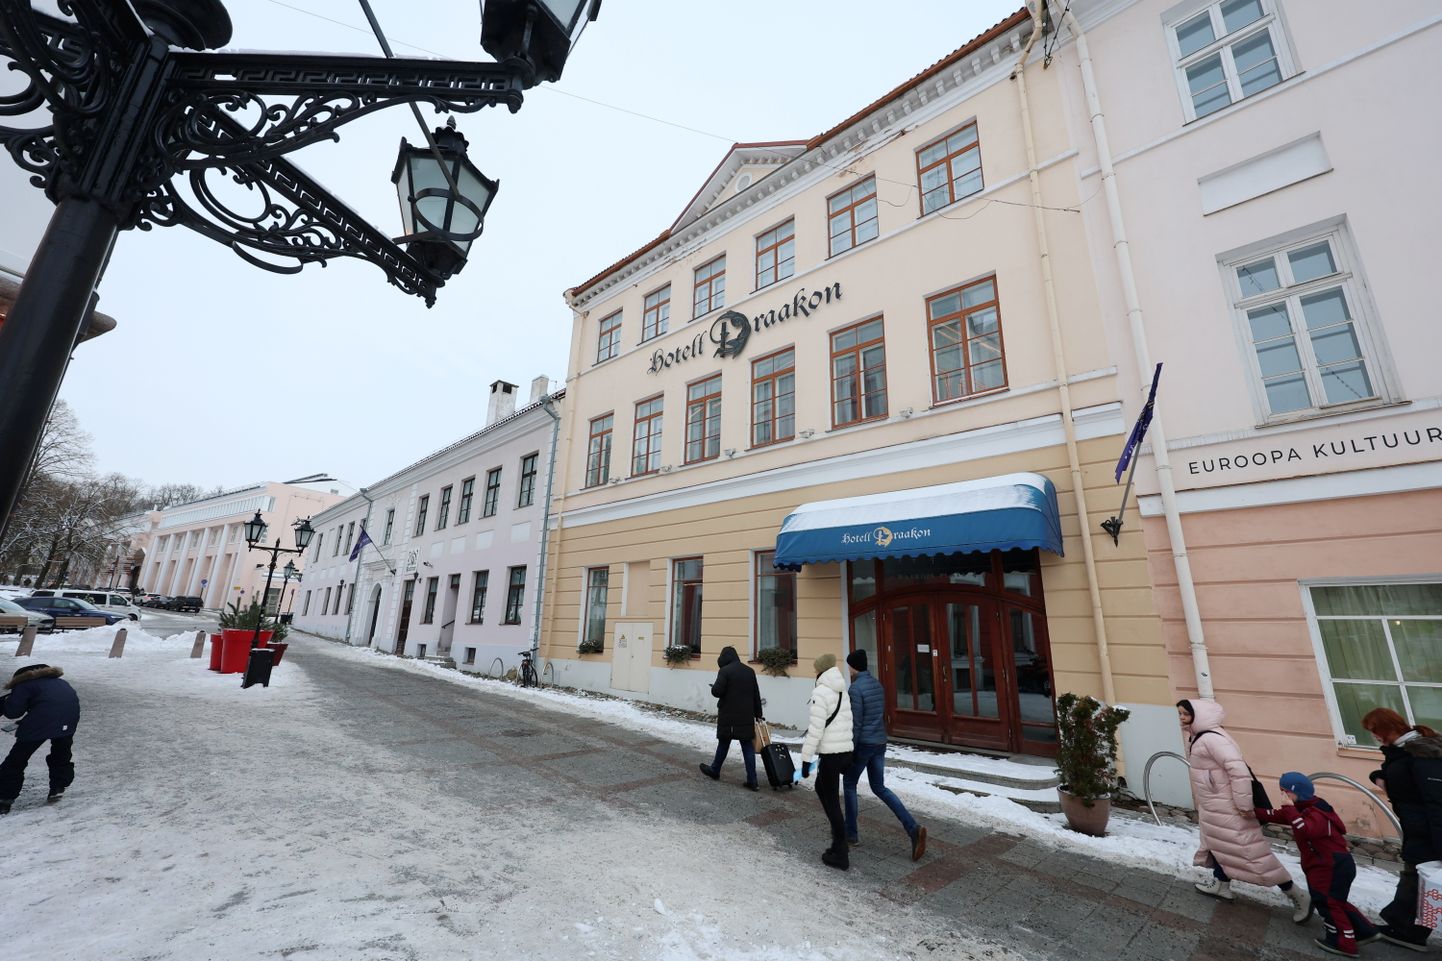 Draakoni hotell Tartu Raekoja platsil sai uue omaniku. Selle ehitamisega kortermajaks ta aga liialt ei kiirusta, et mitte häirida saabuval Euroopa kultuuripealinna aastal elu südalinnas.